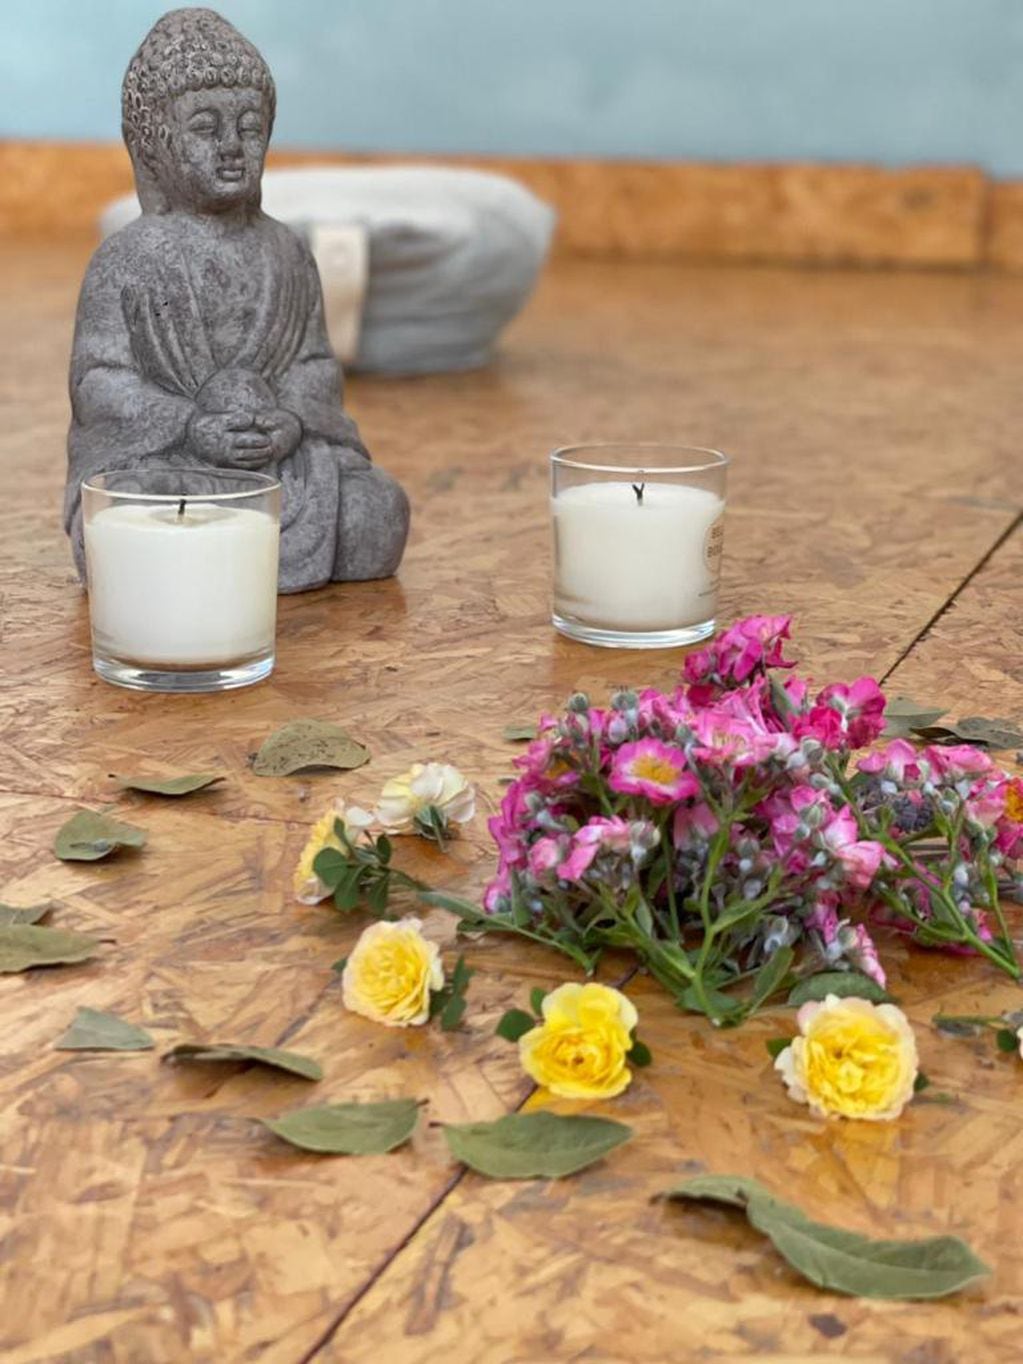 En Namasté Espacio de Bienestar podes encontrar clases de yoga, meditaciones, talleres, un espacio terapéutico sanador. 